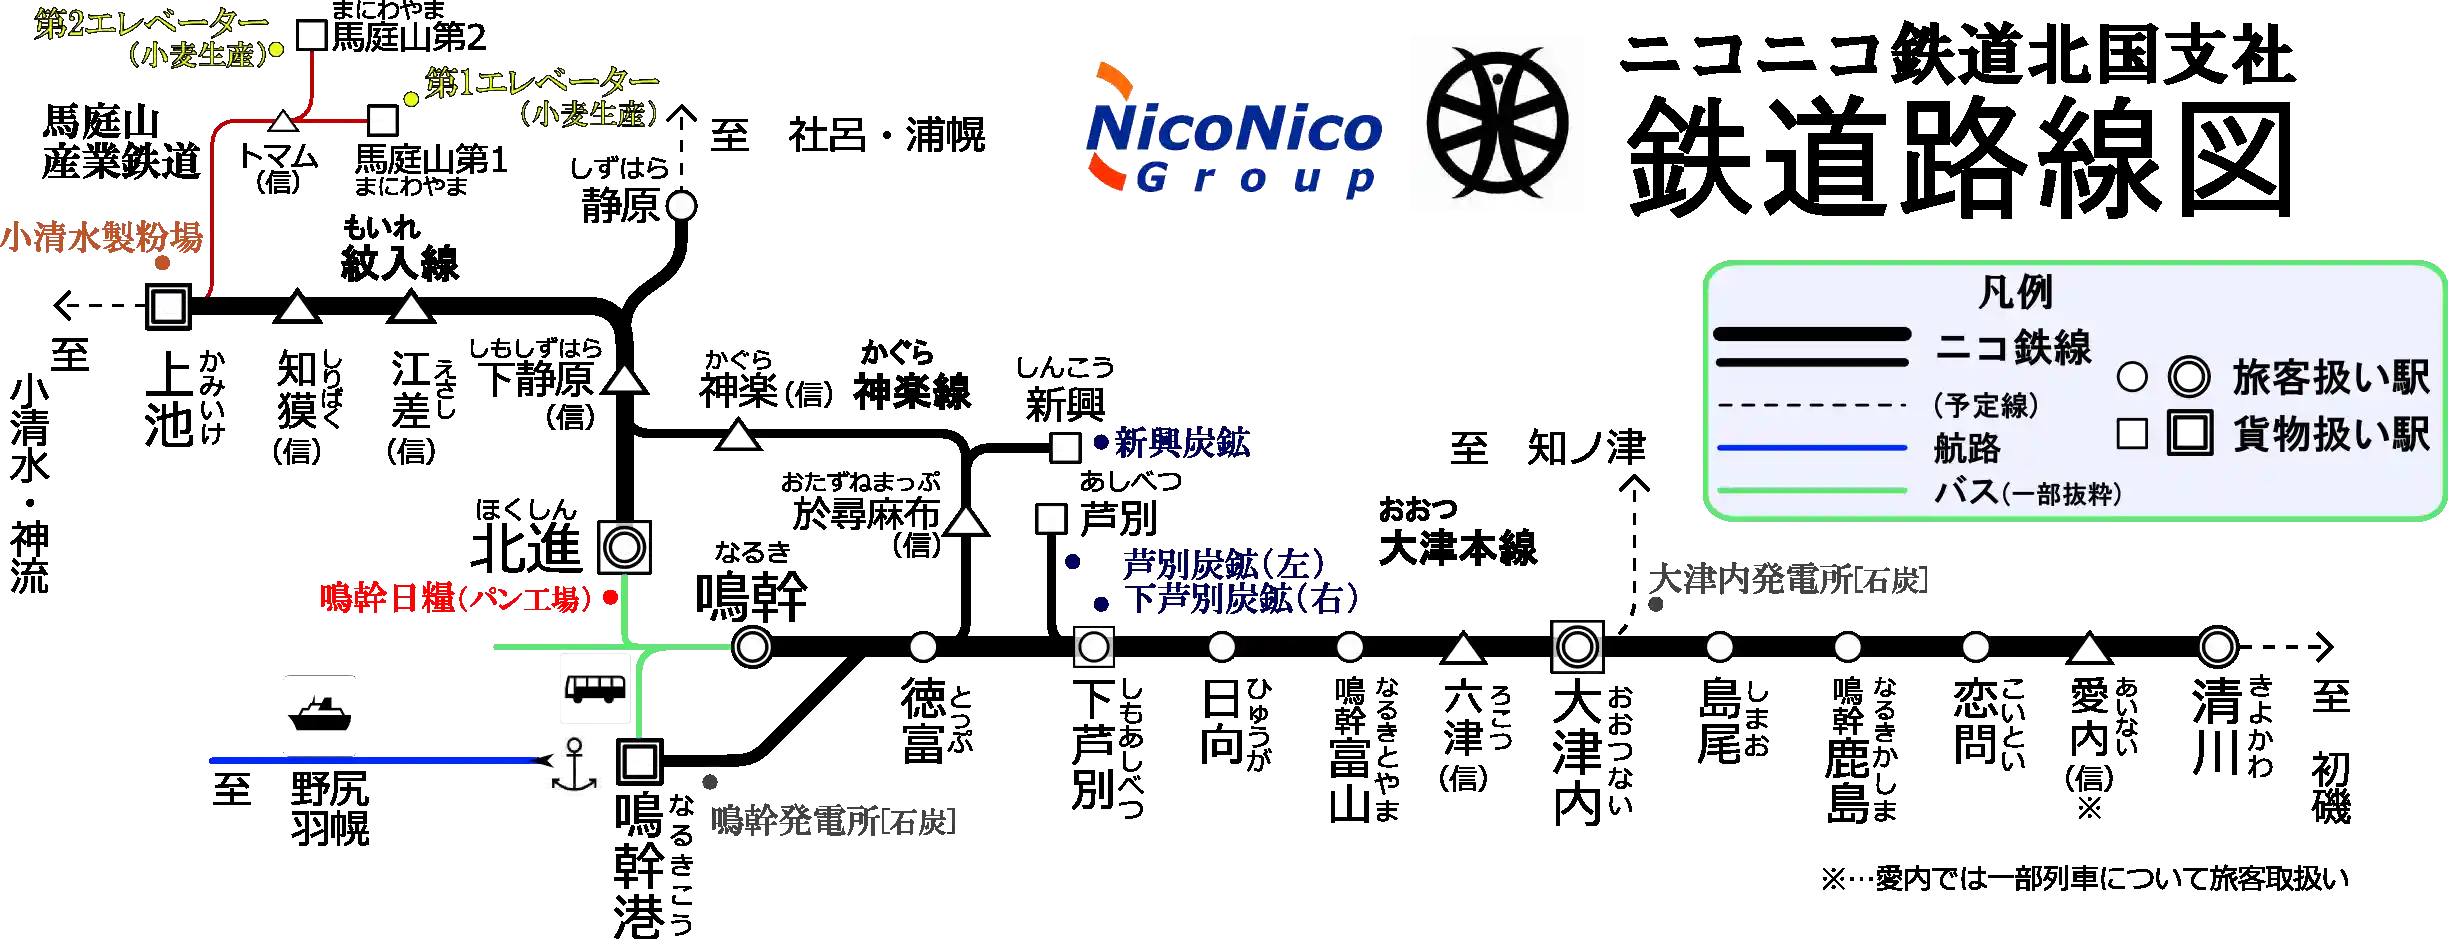 ニコ鉄系統図-1.png